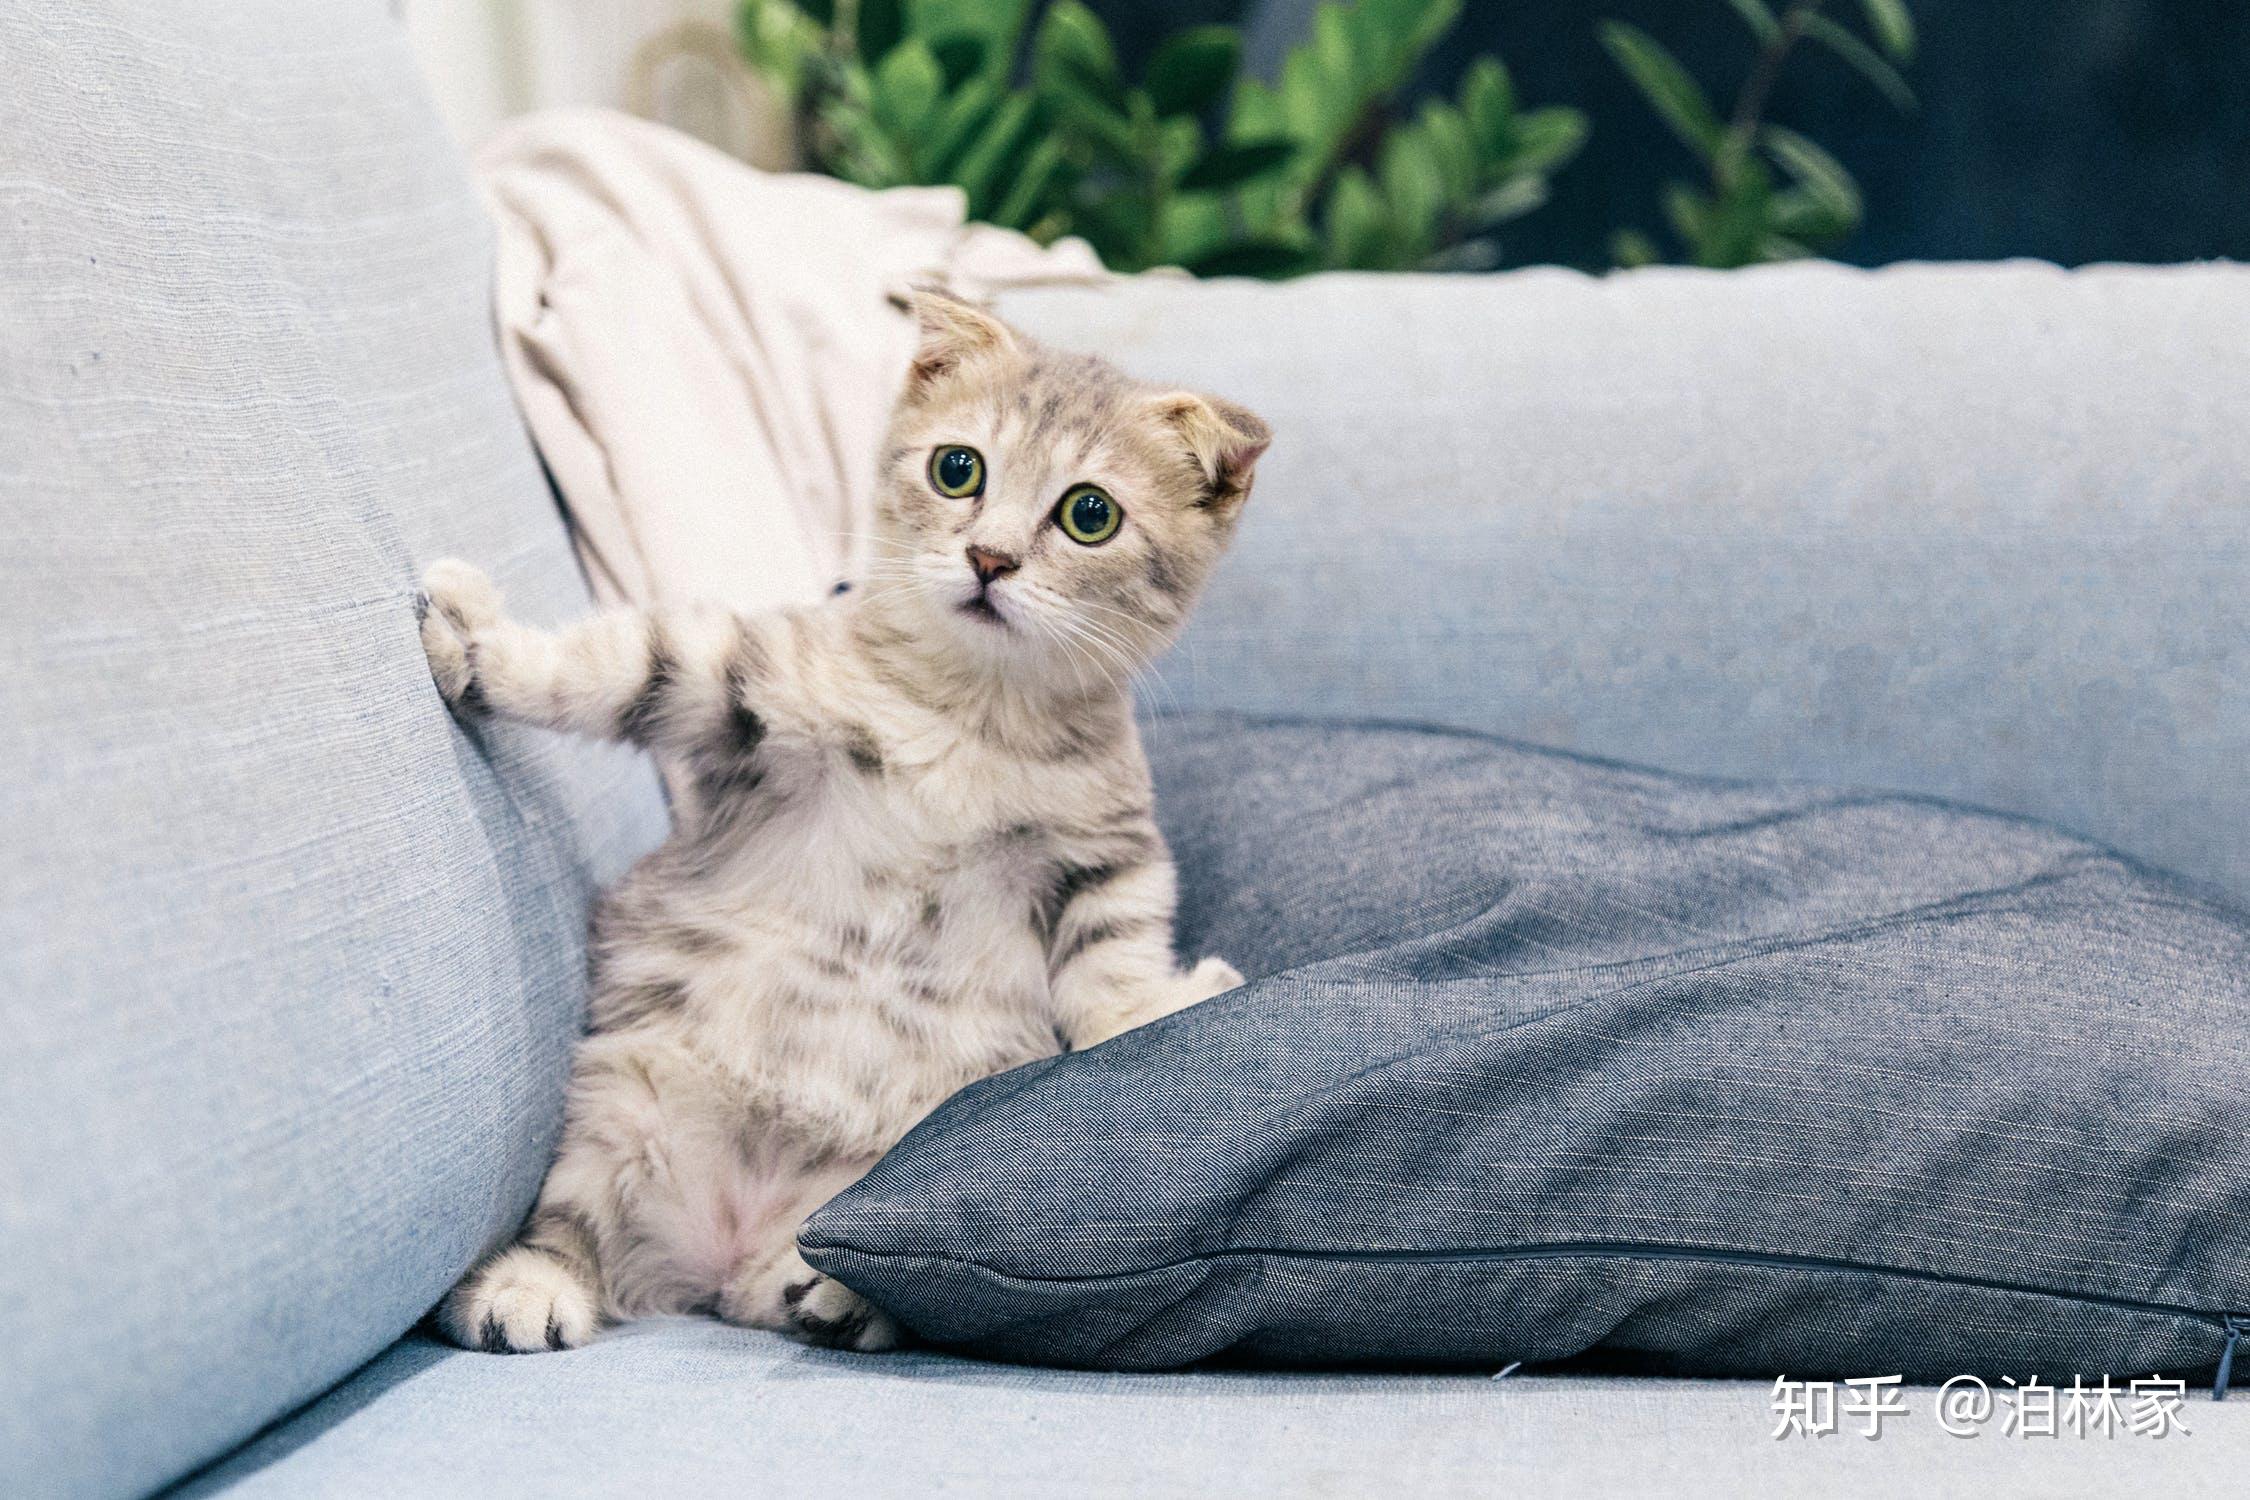 你们是怎么防止猫咪抓沙发的?